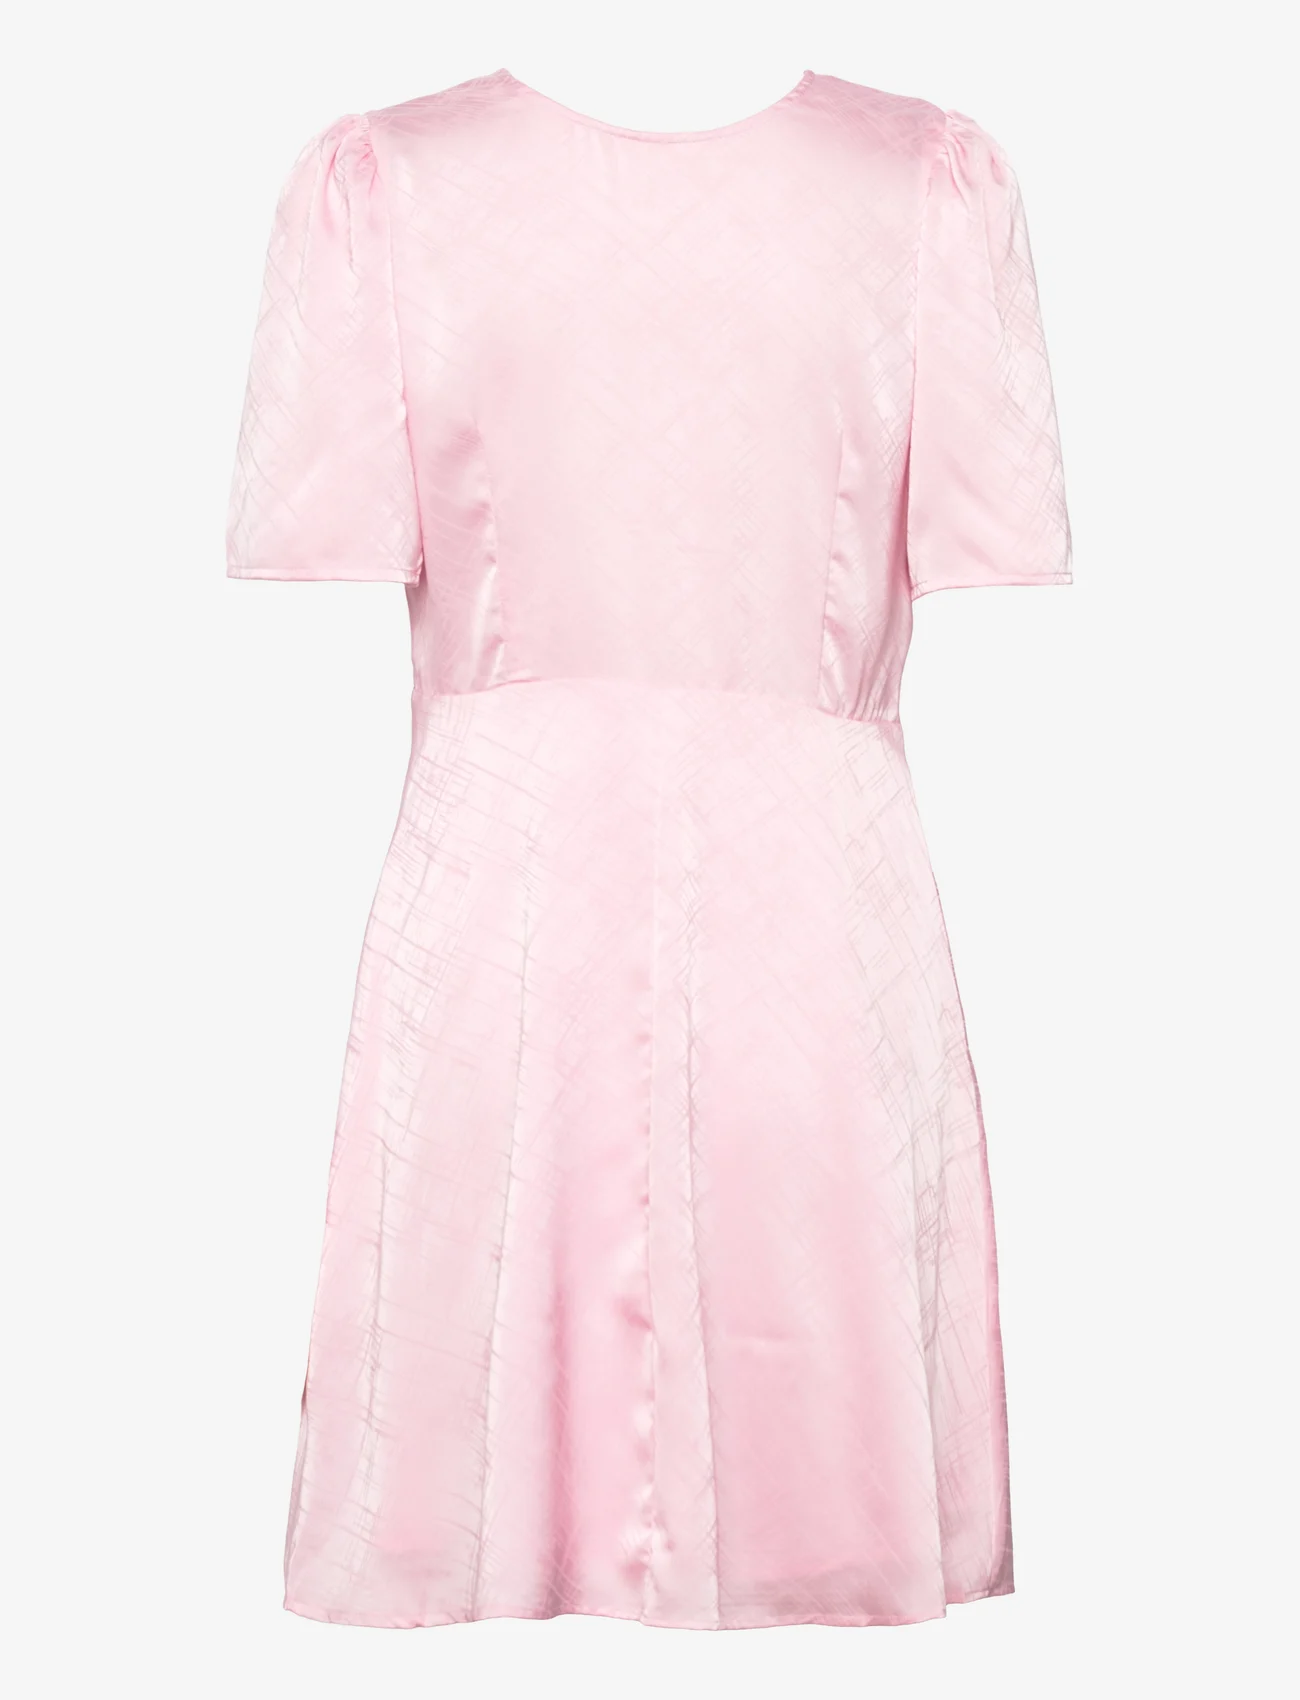 A-View - Enitta short dress - odzież imprezowa w cenach outletowych - soft rose - 1